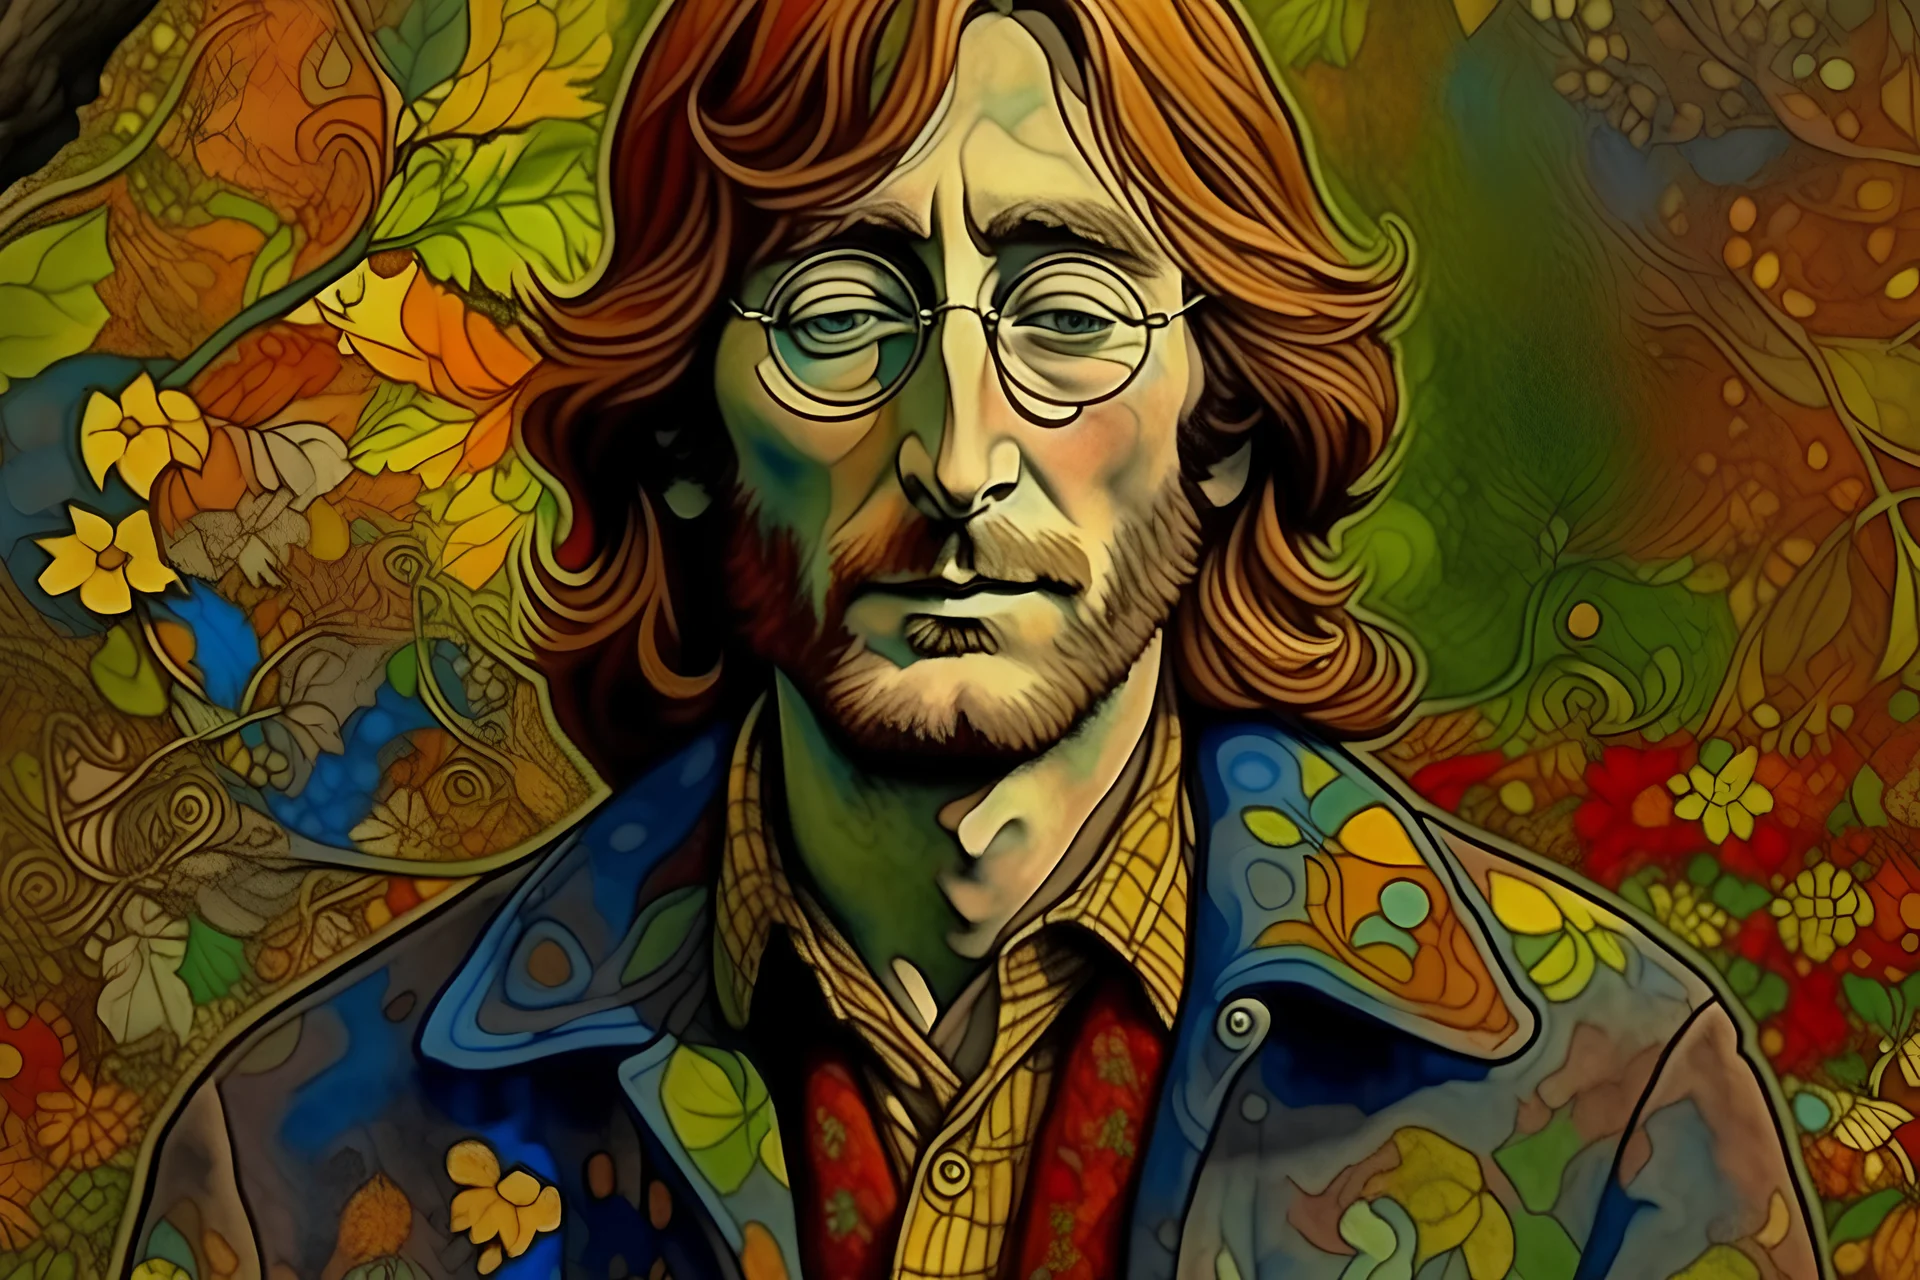 Imagine: John Lennon al estilo van gogh